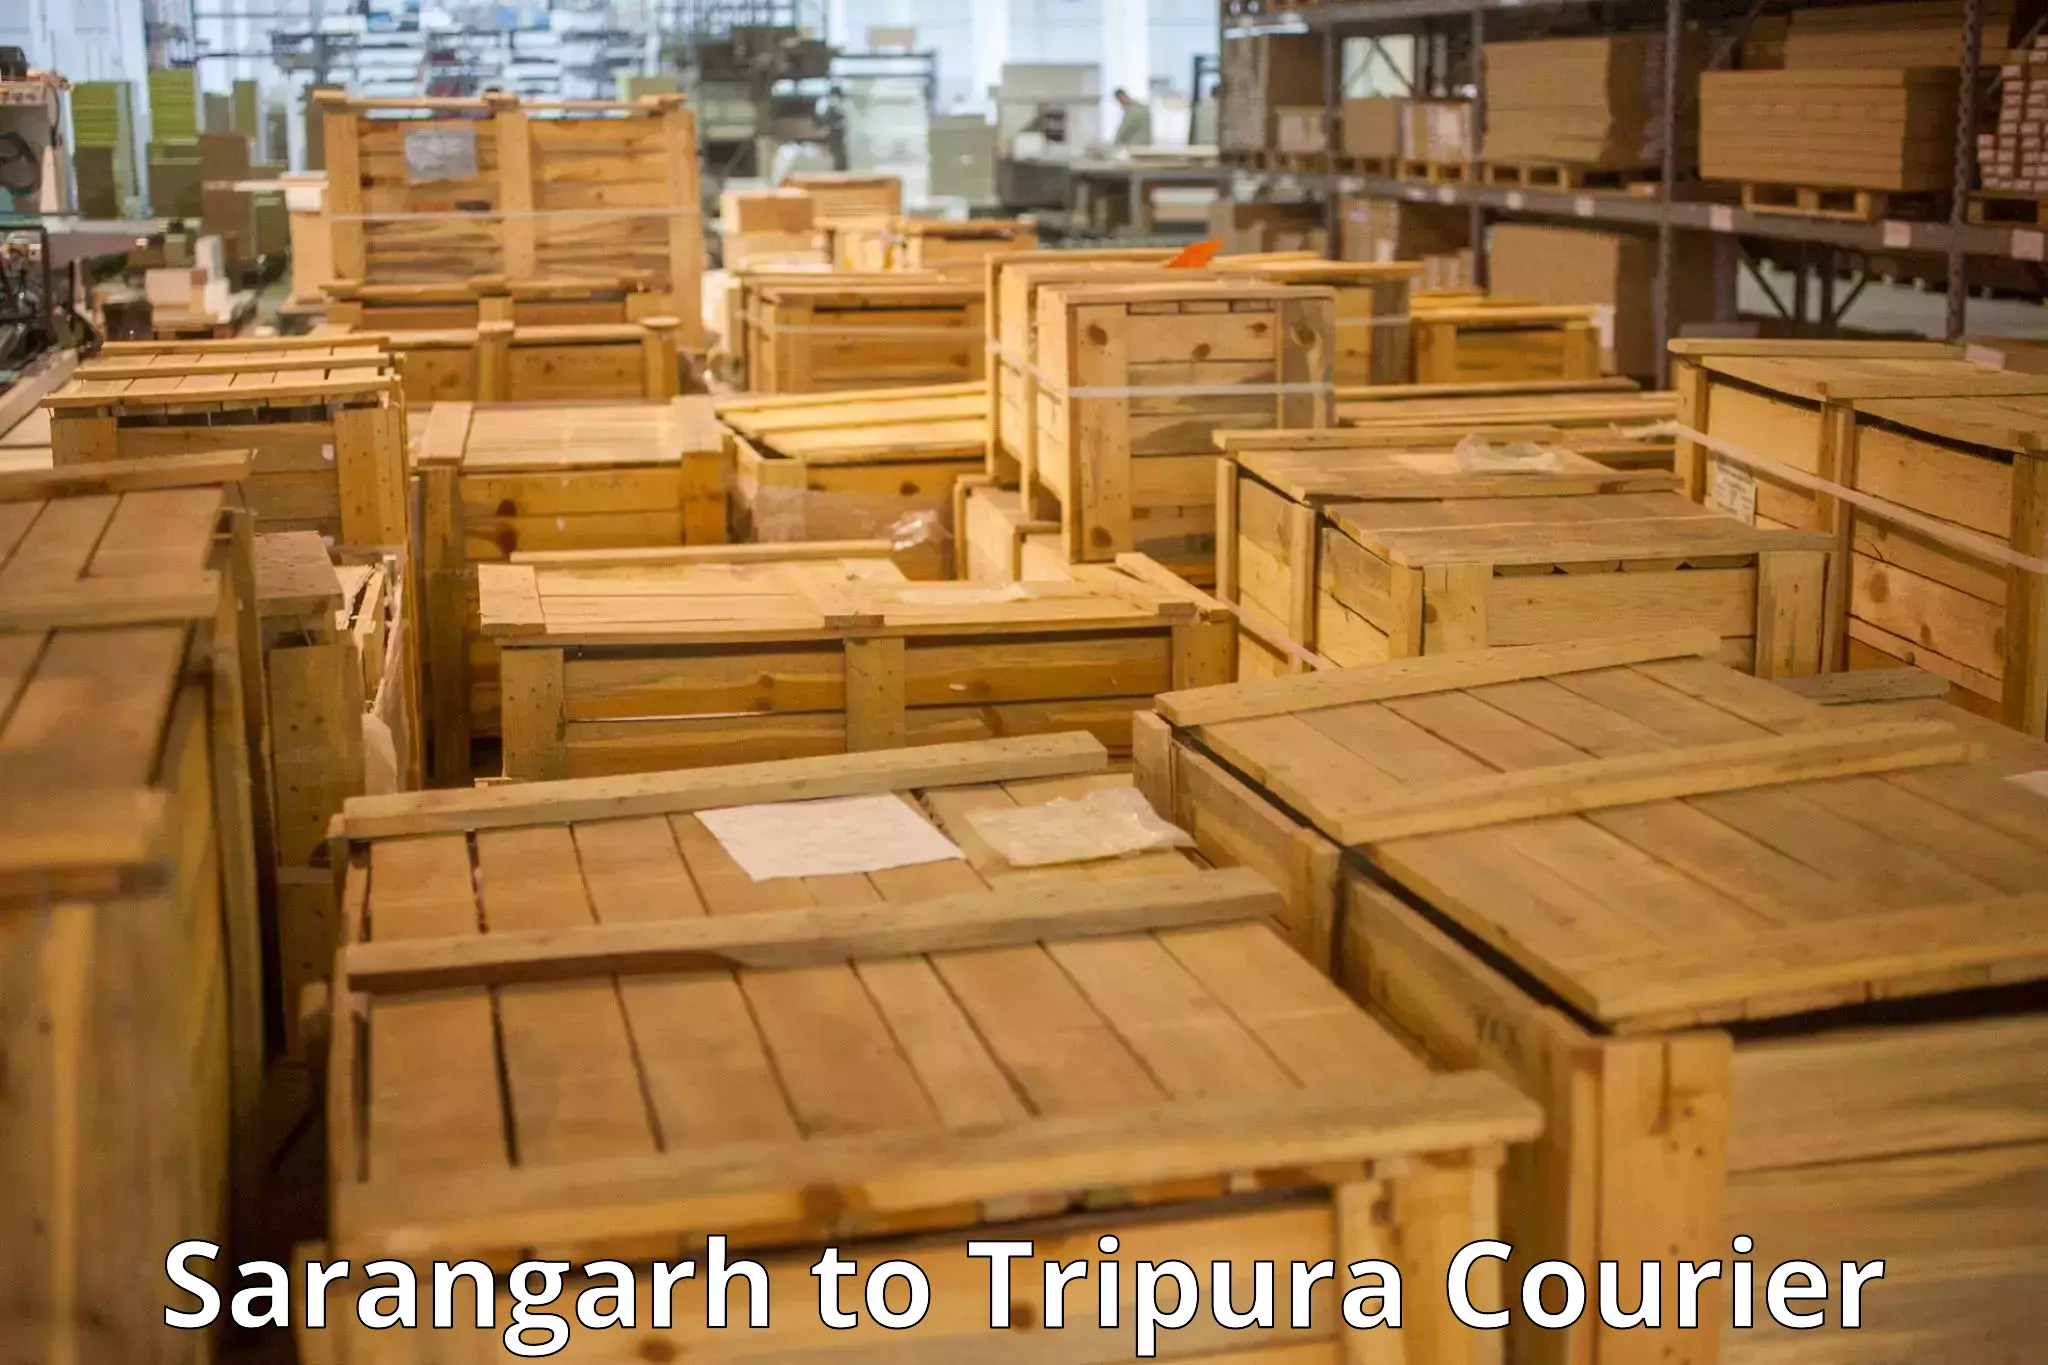 Outsize baggage transport Sarangarh to Udaipur Tripura